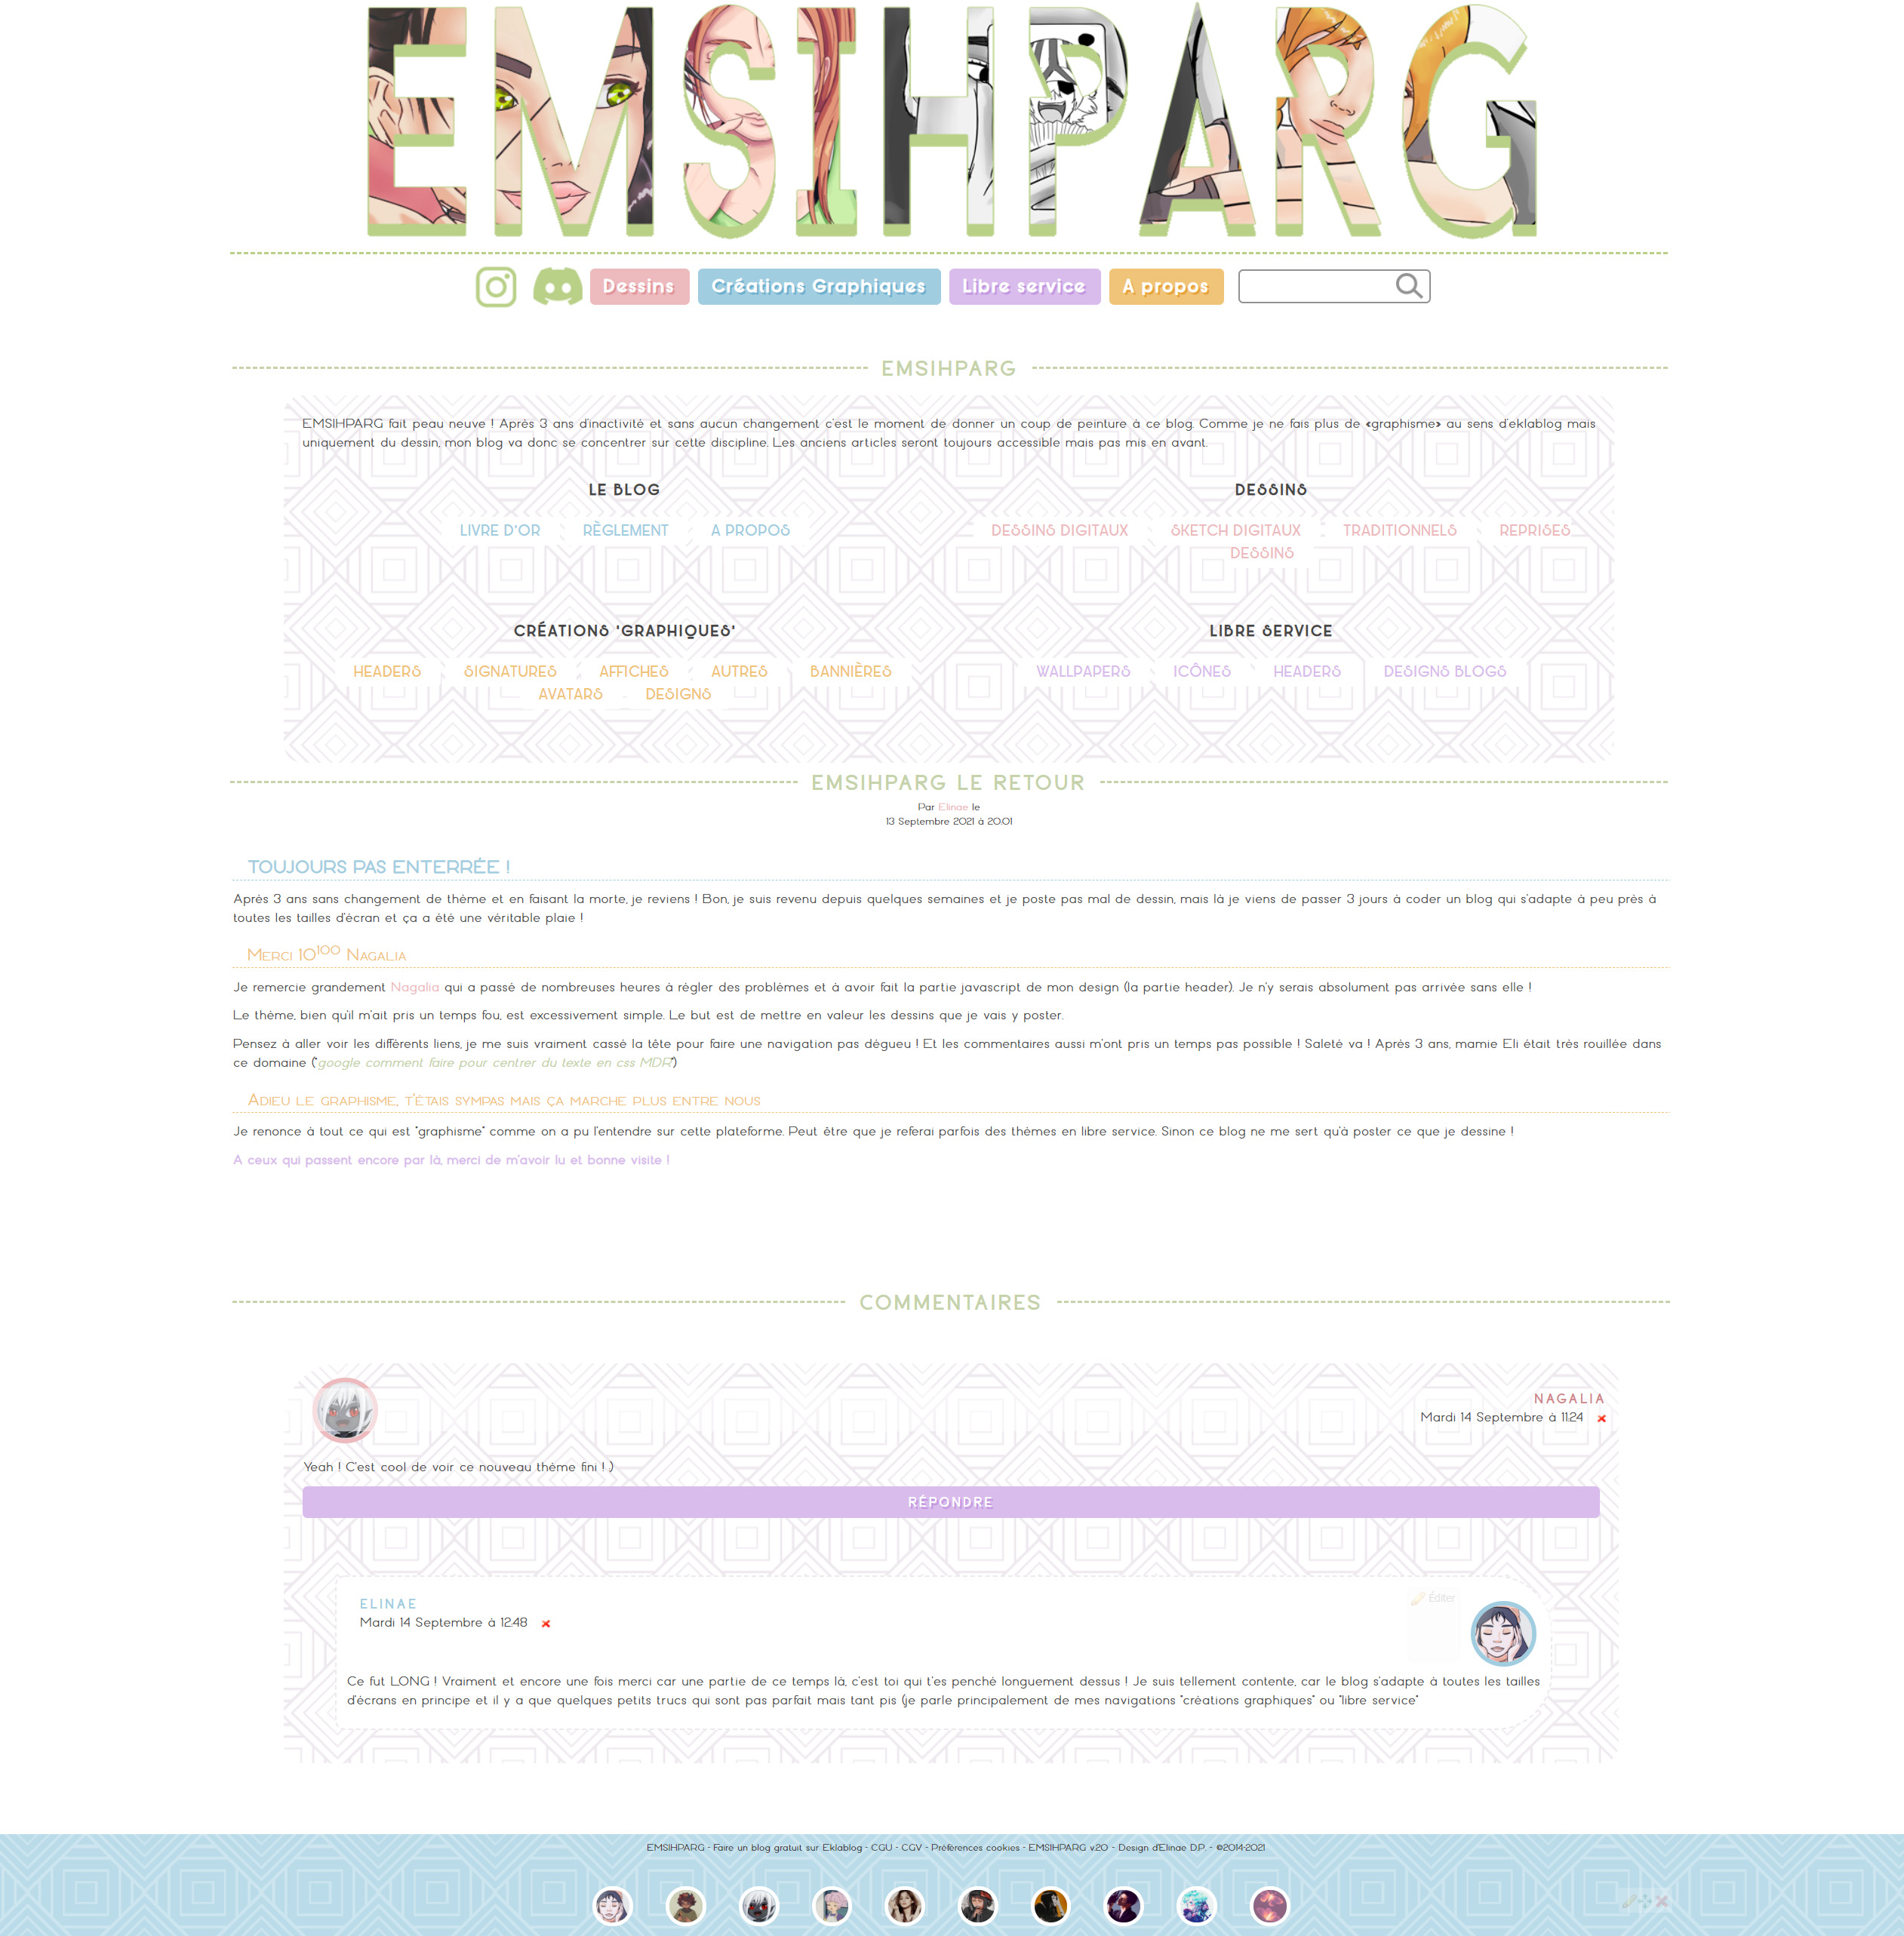 Design #51 - EMSIHPARG V 2.0